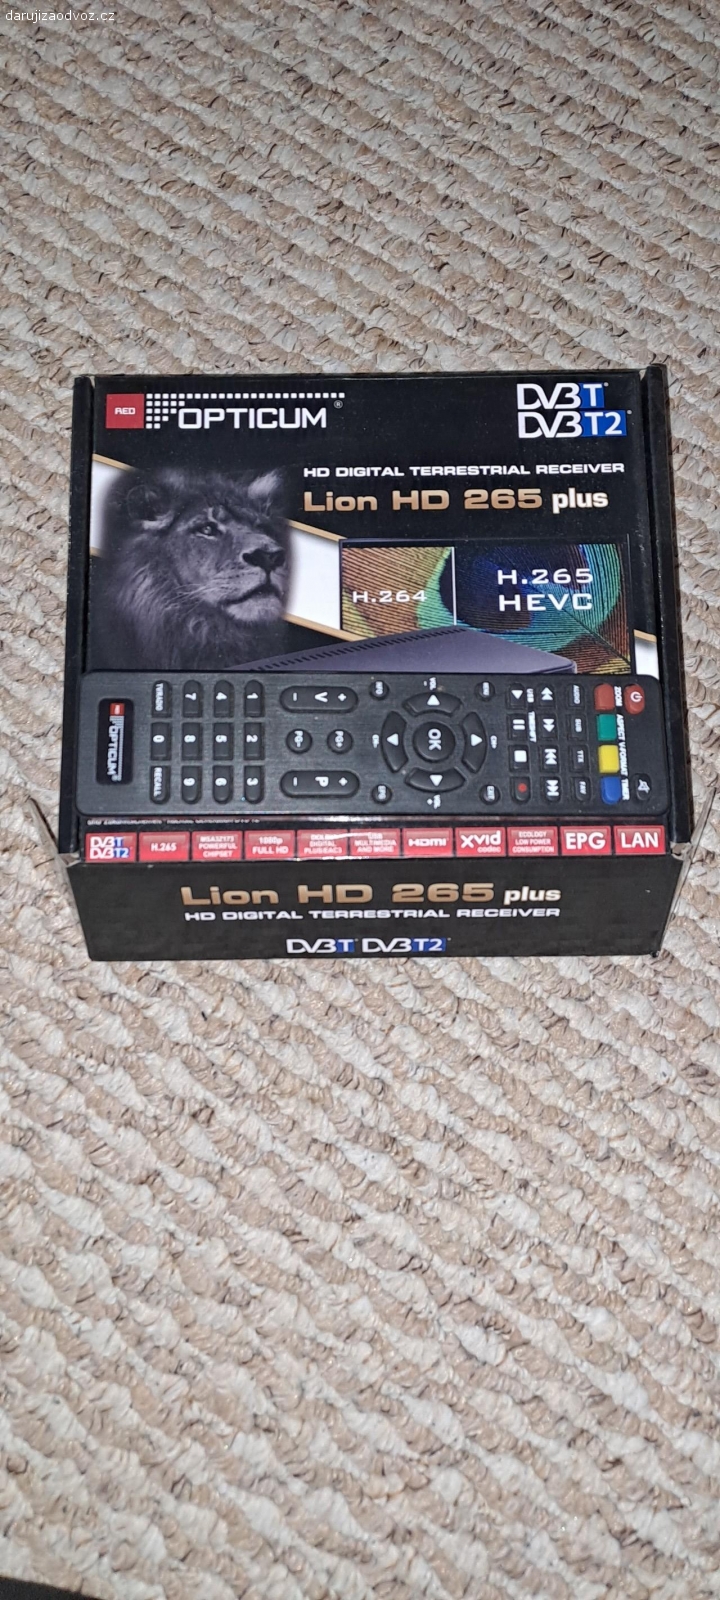 dálkový ovladač. k settopboxu Opticum Lion HD 265
skoro nový s krabičkou